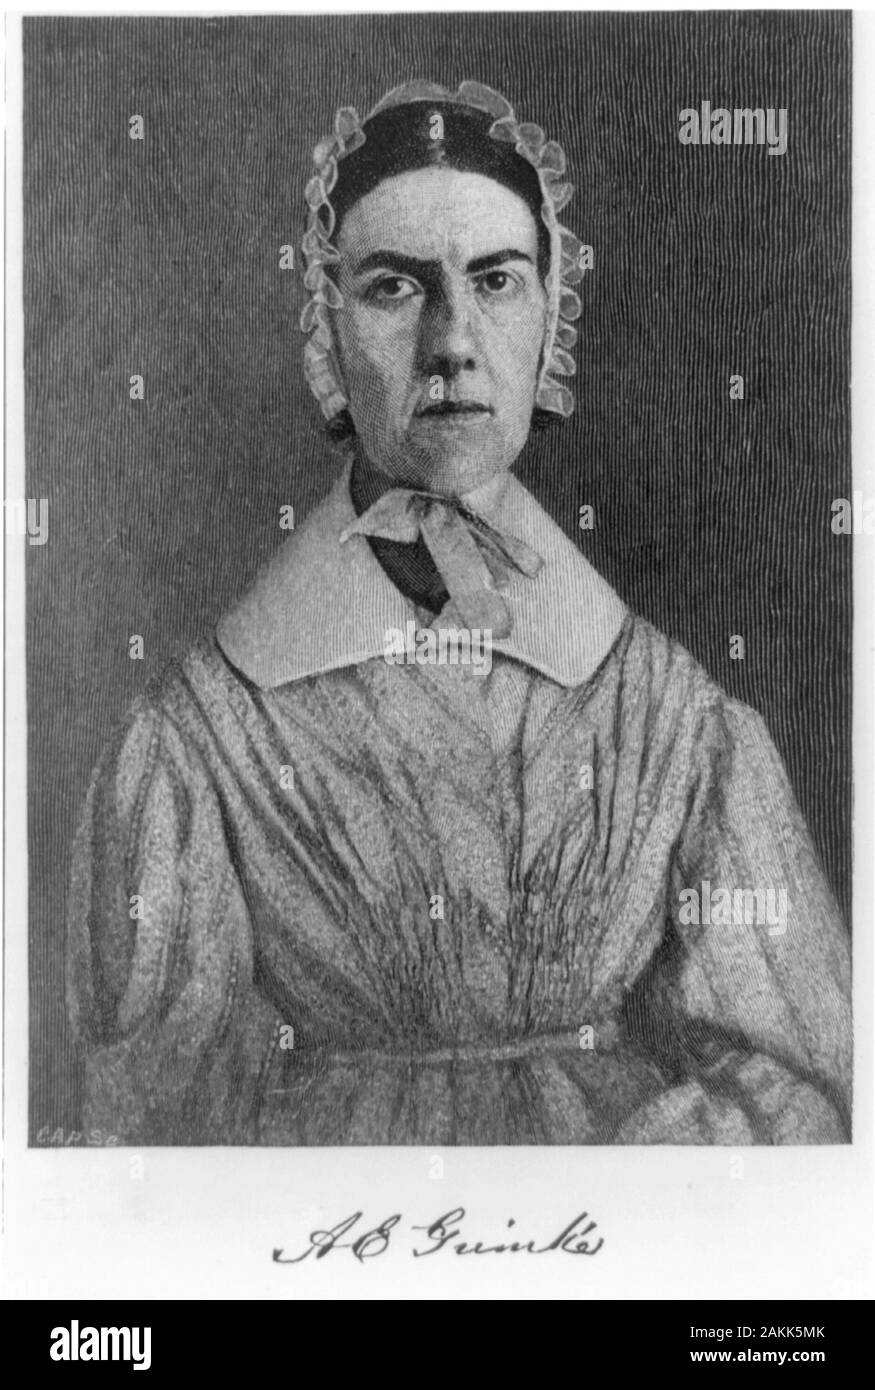 Angelina Grimké, Angelina Emily Grimké souder (1805 - 1879) activiste politique américain, défenseure des droits des femmes, et un partisan de le mouvement pour le suffrage des femmes. Banque D'Images